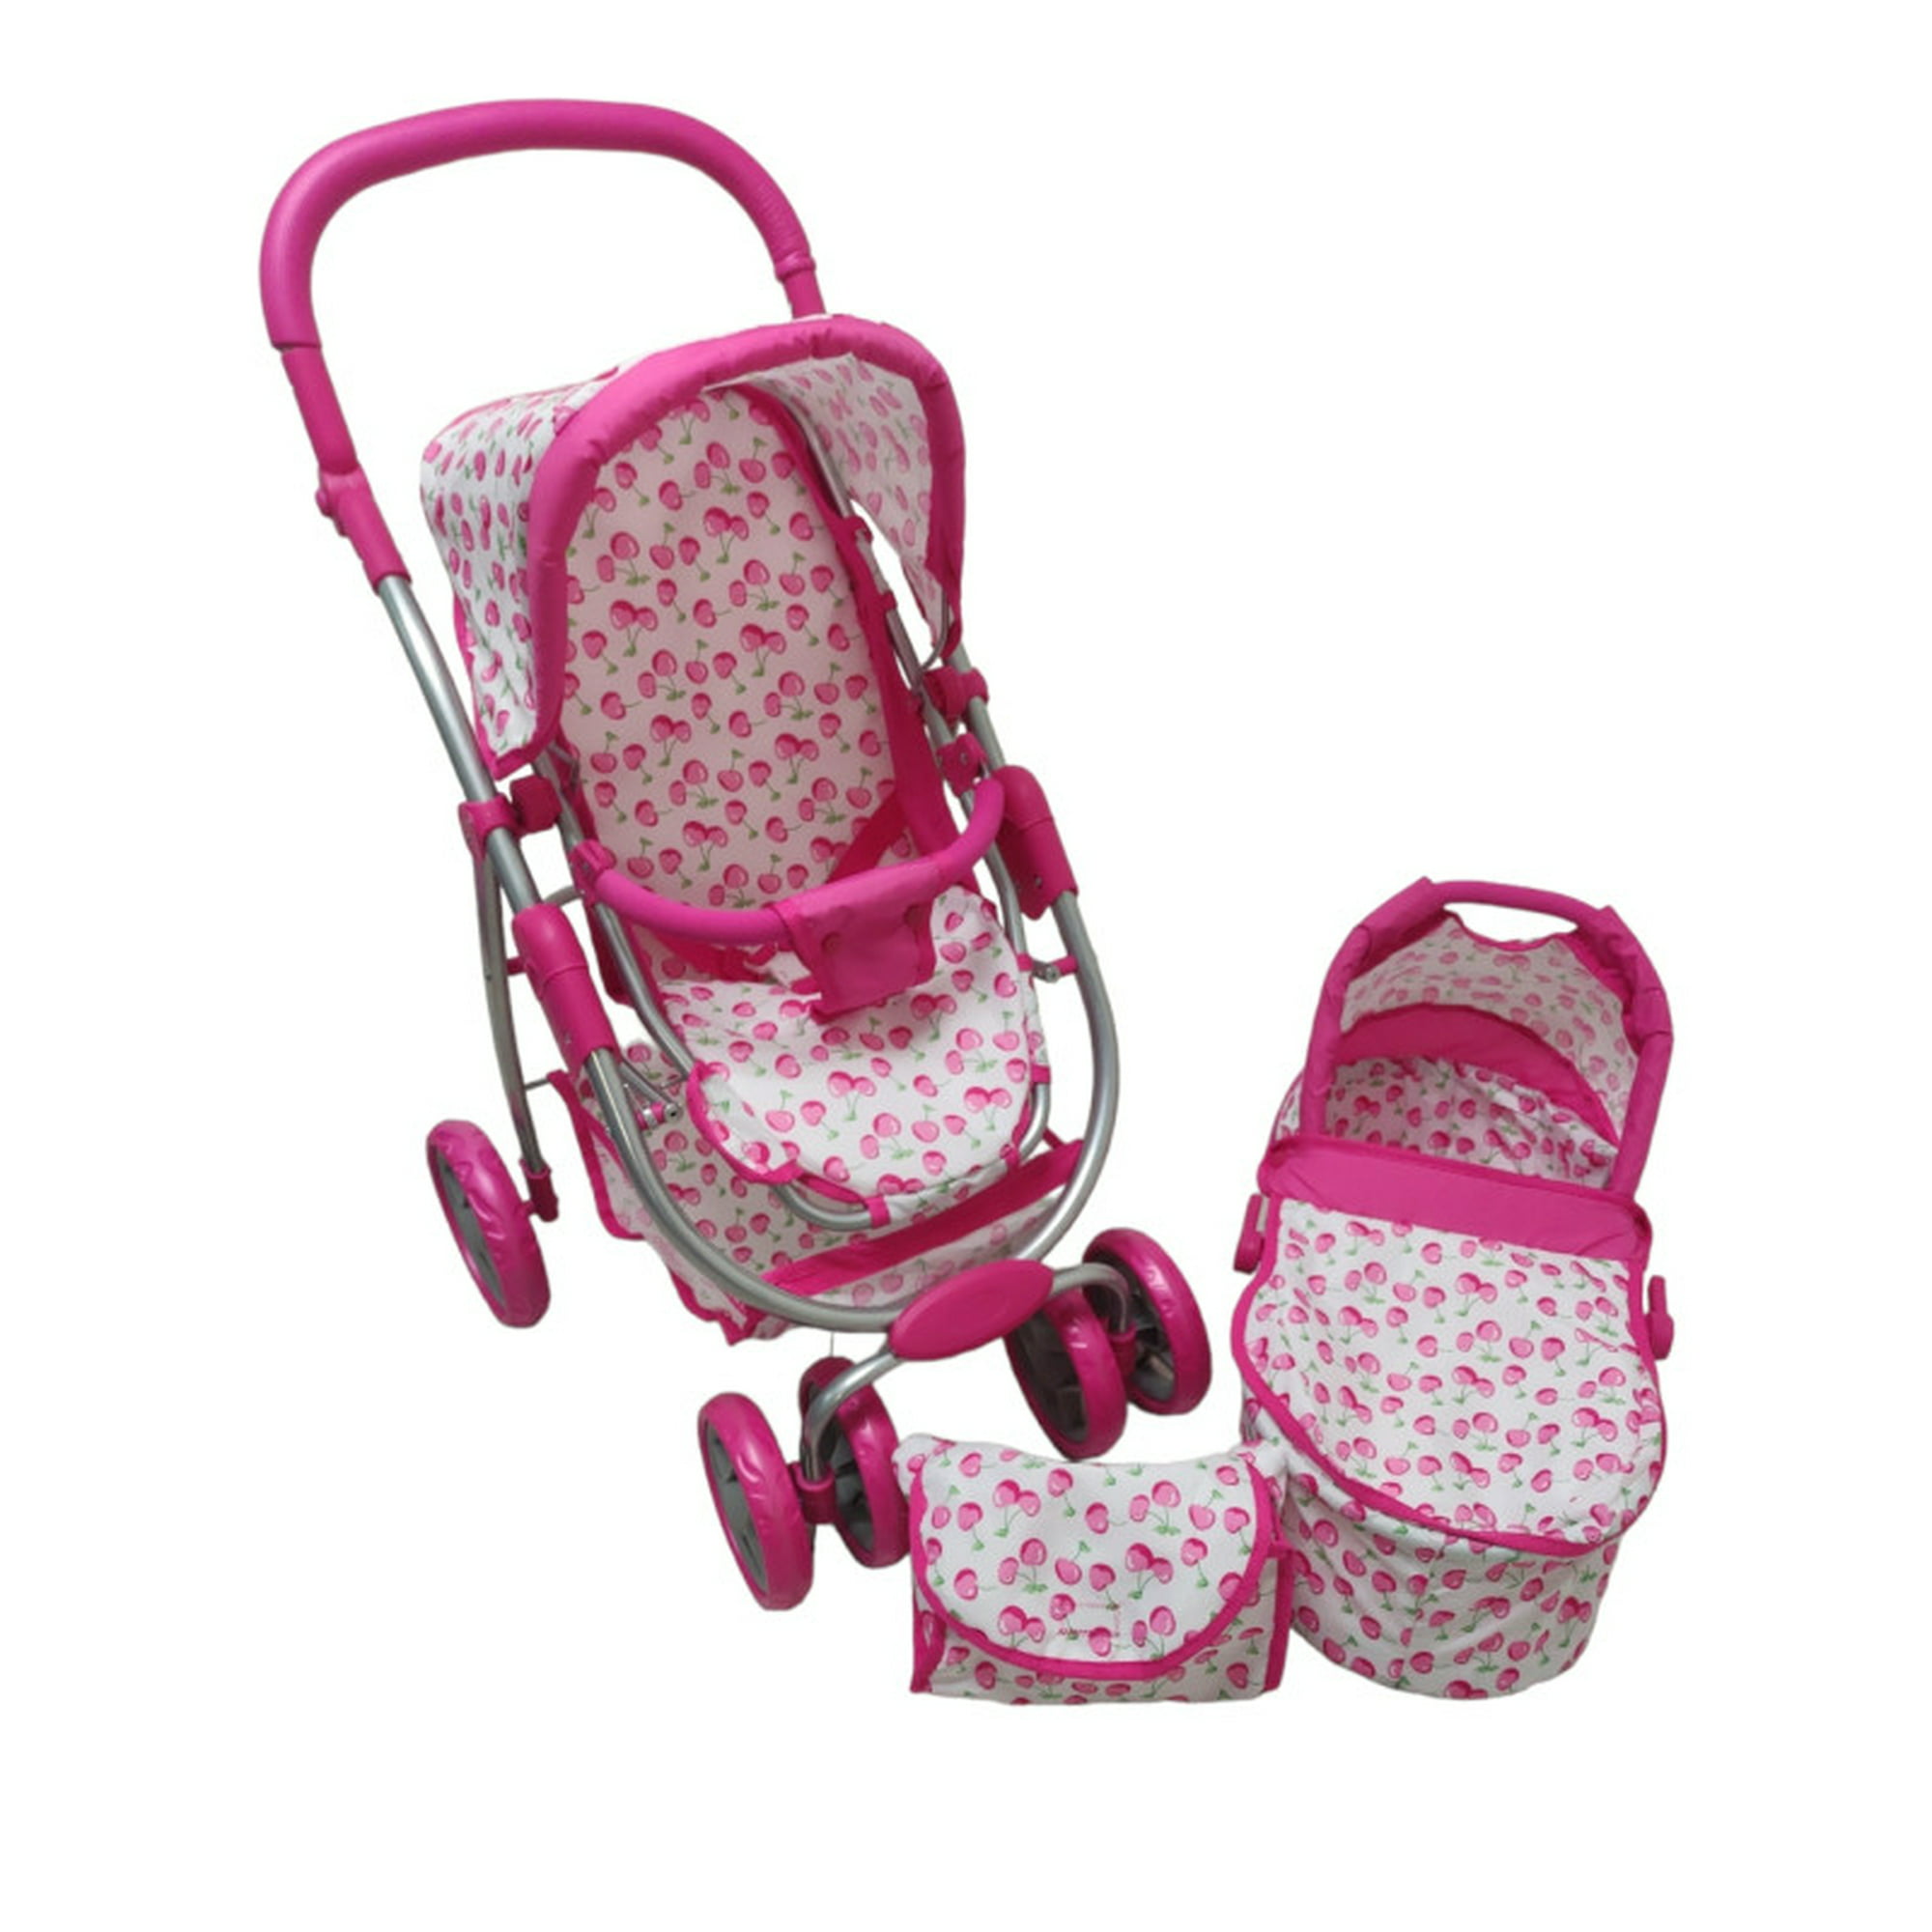 Carriola para muñeca accesorio the baby shop con llantas soft eva anti-Ruido y resistentes rosa -